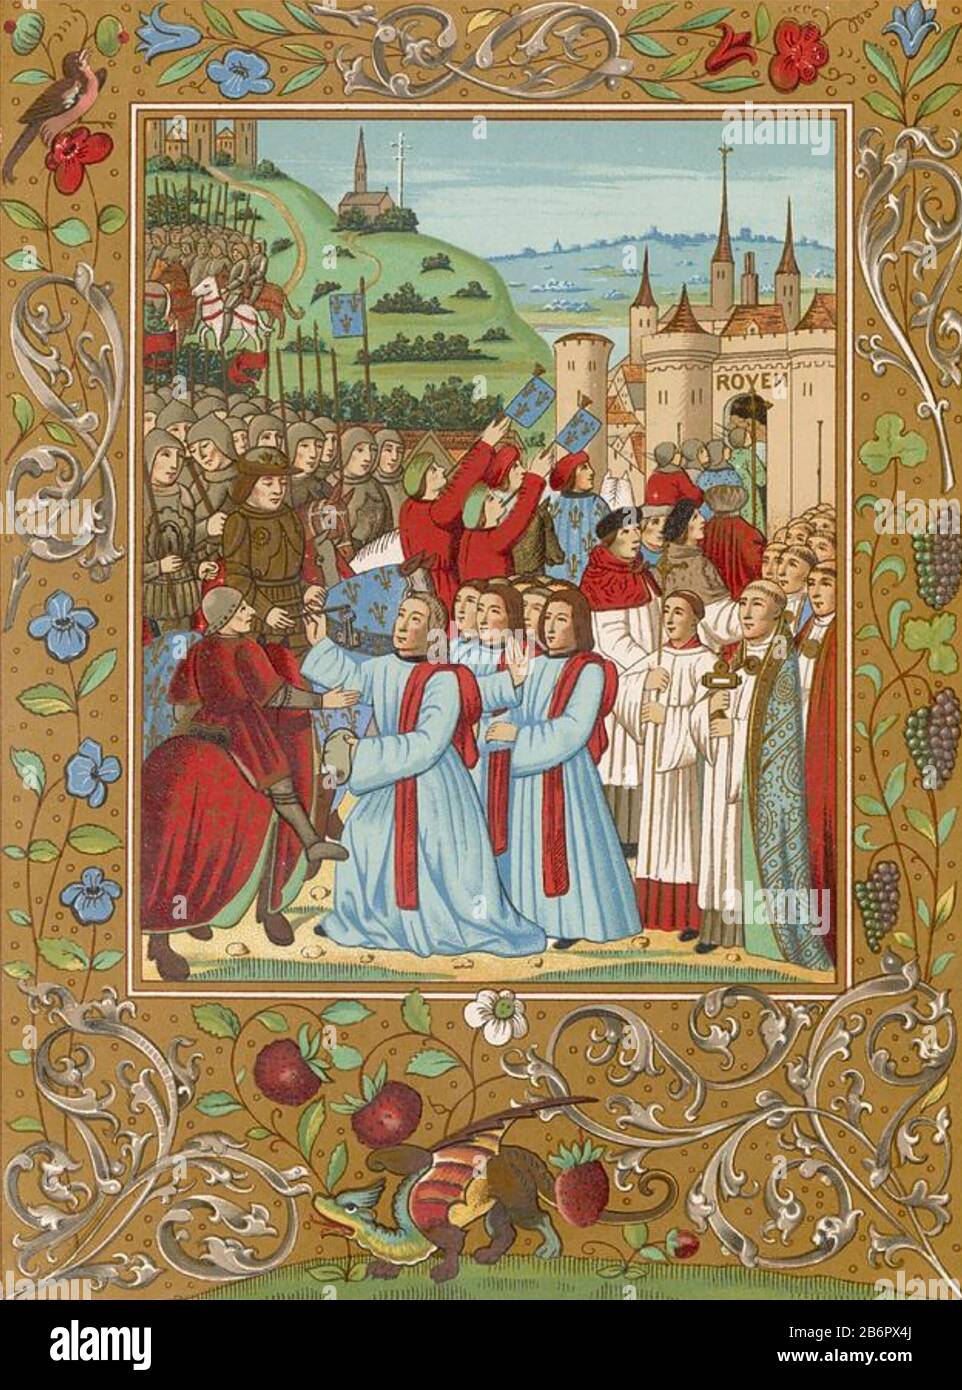 Carlos VII DE FRANCIA (1403-1461) entra en Ruán en 1449 Foto de stock